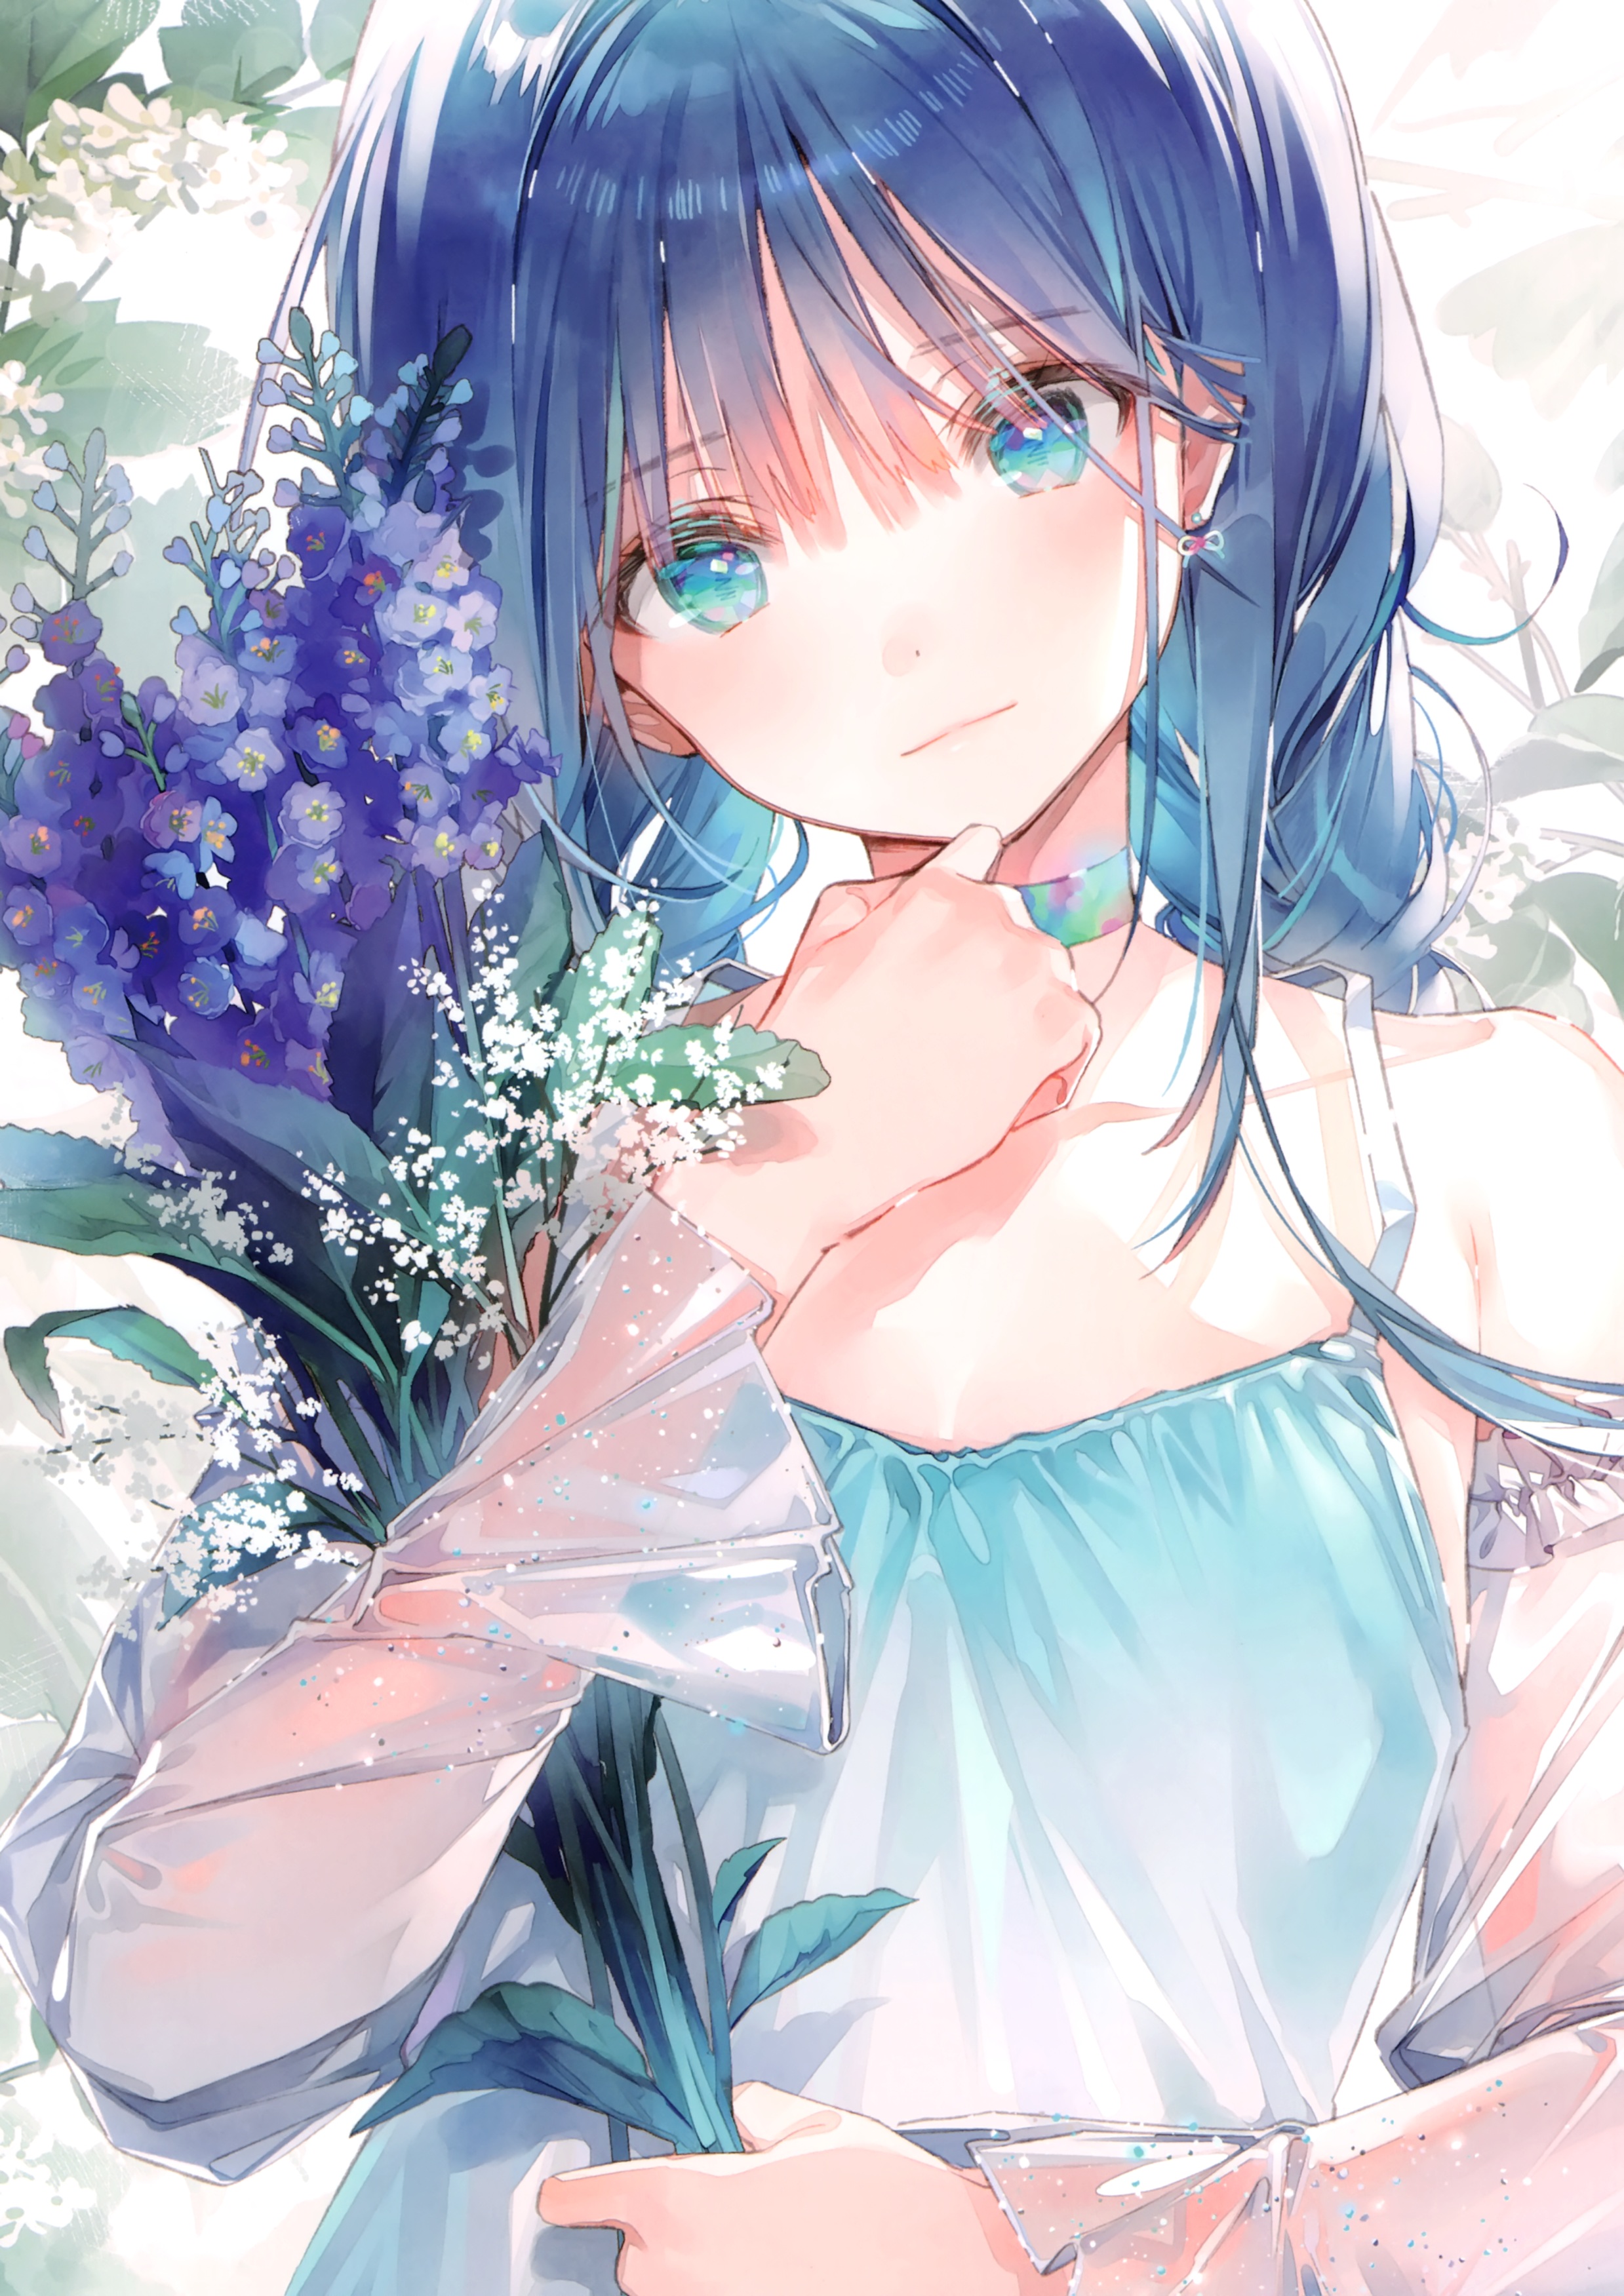 Anime 2477x3503 anime 2D digital art artwork anime girls DSmile blue hair aqua eyes flowers